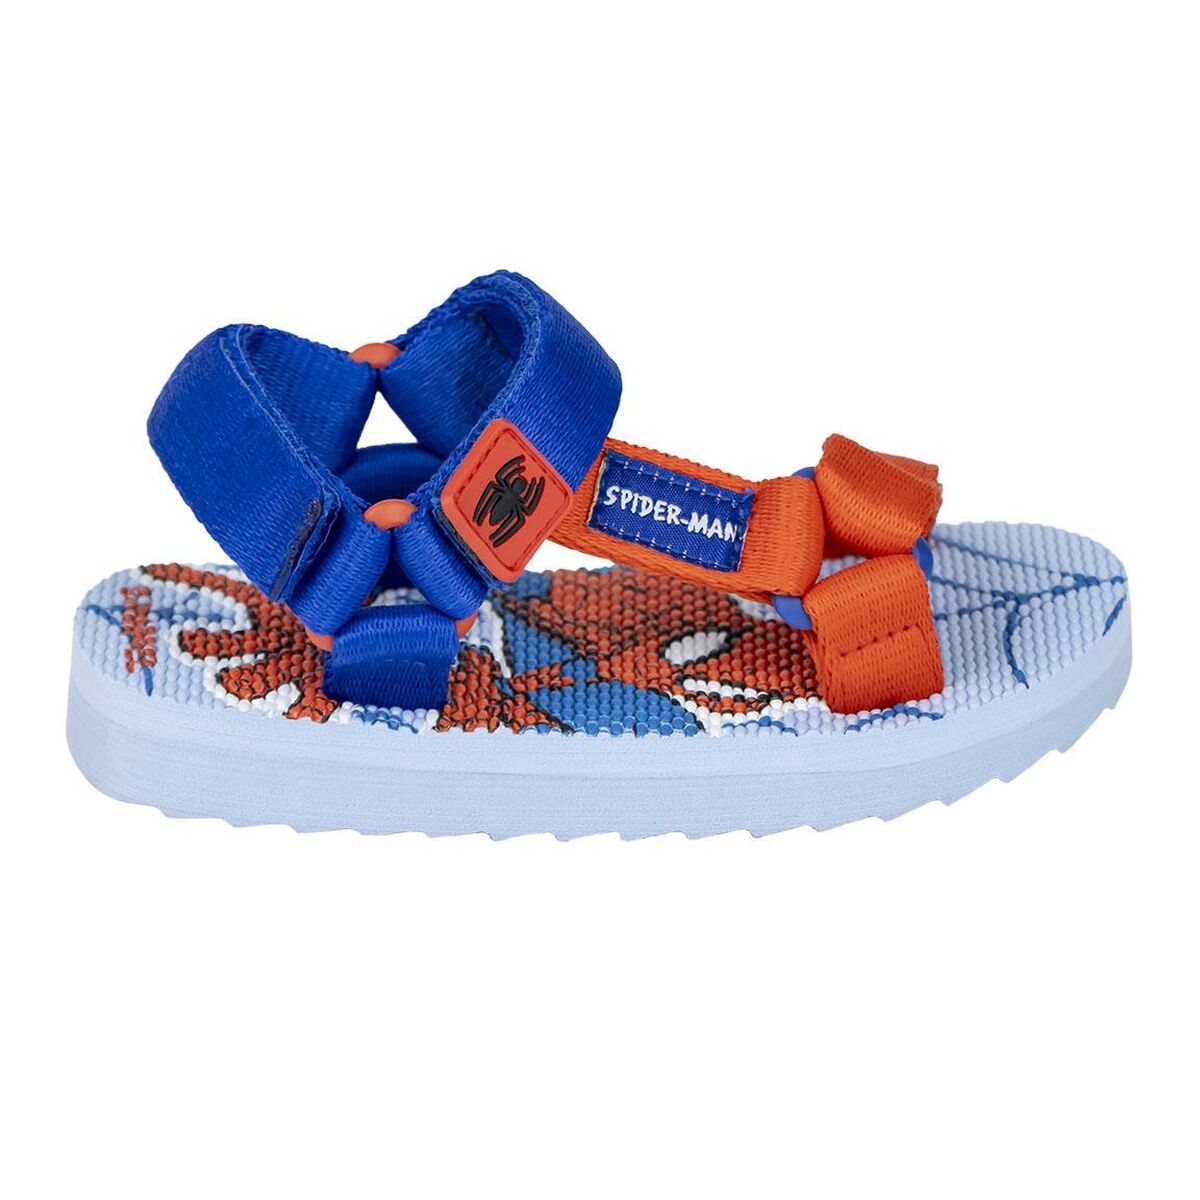 Osta tuote Lasten sandaalit Spider-Man Sininen (Jalankoko: 31) verkkokaupastamme Korhone: Lelut & Asut 20% alennuksella koodilla VIIKONLOPPU